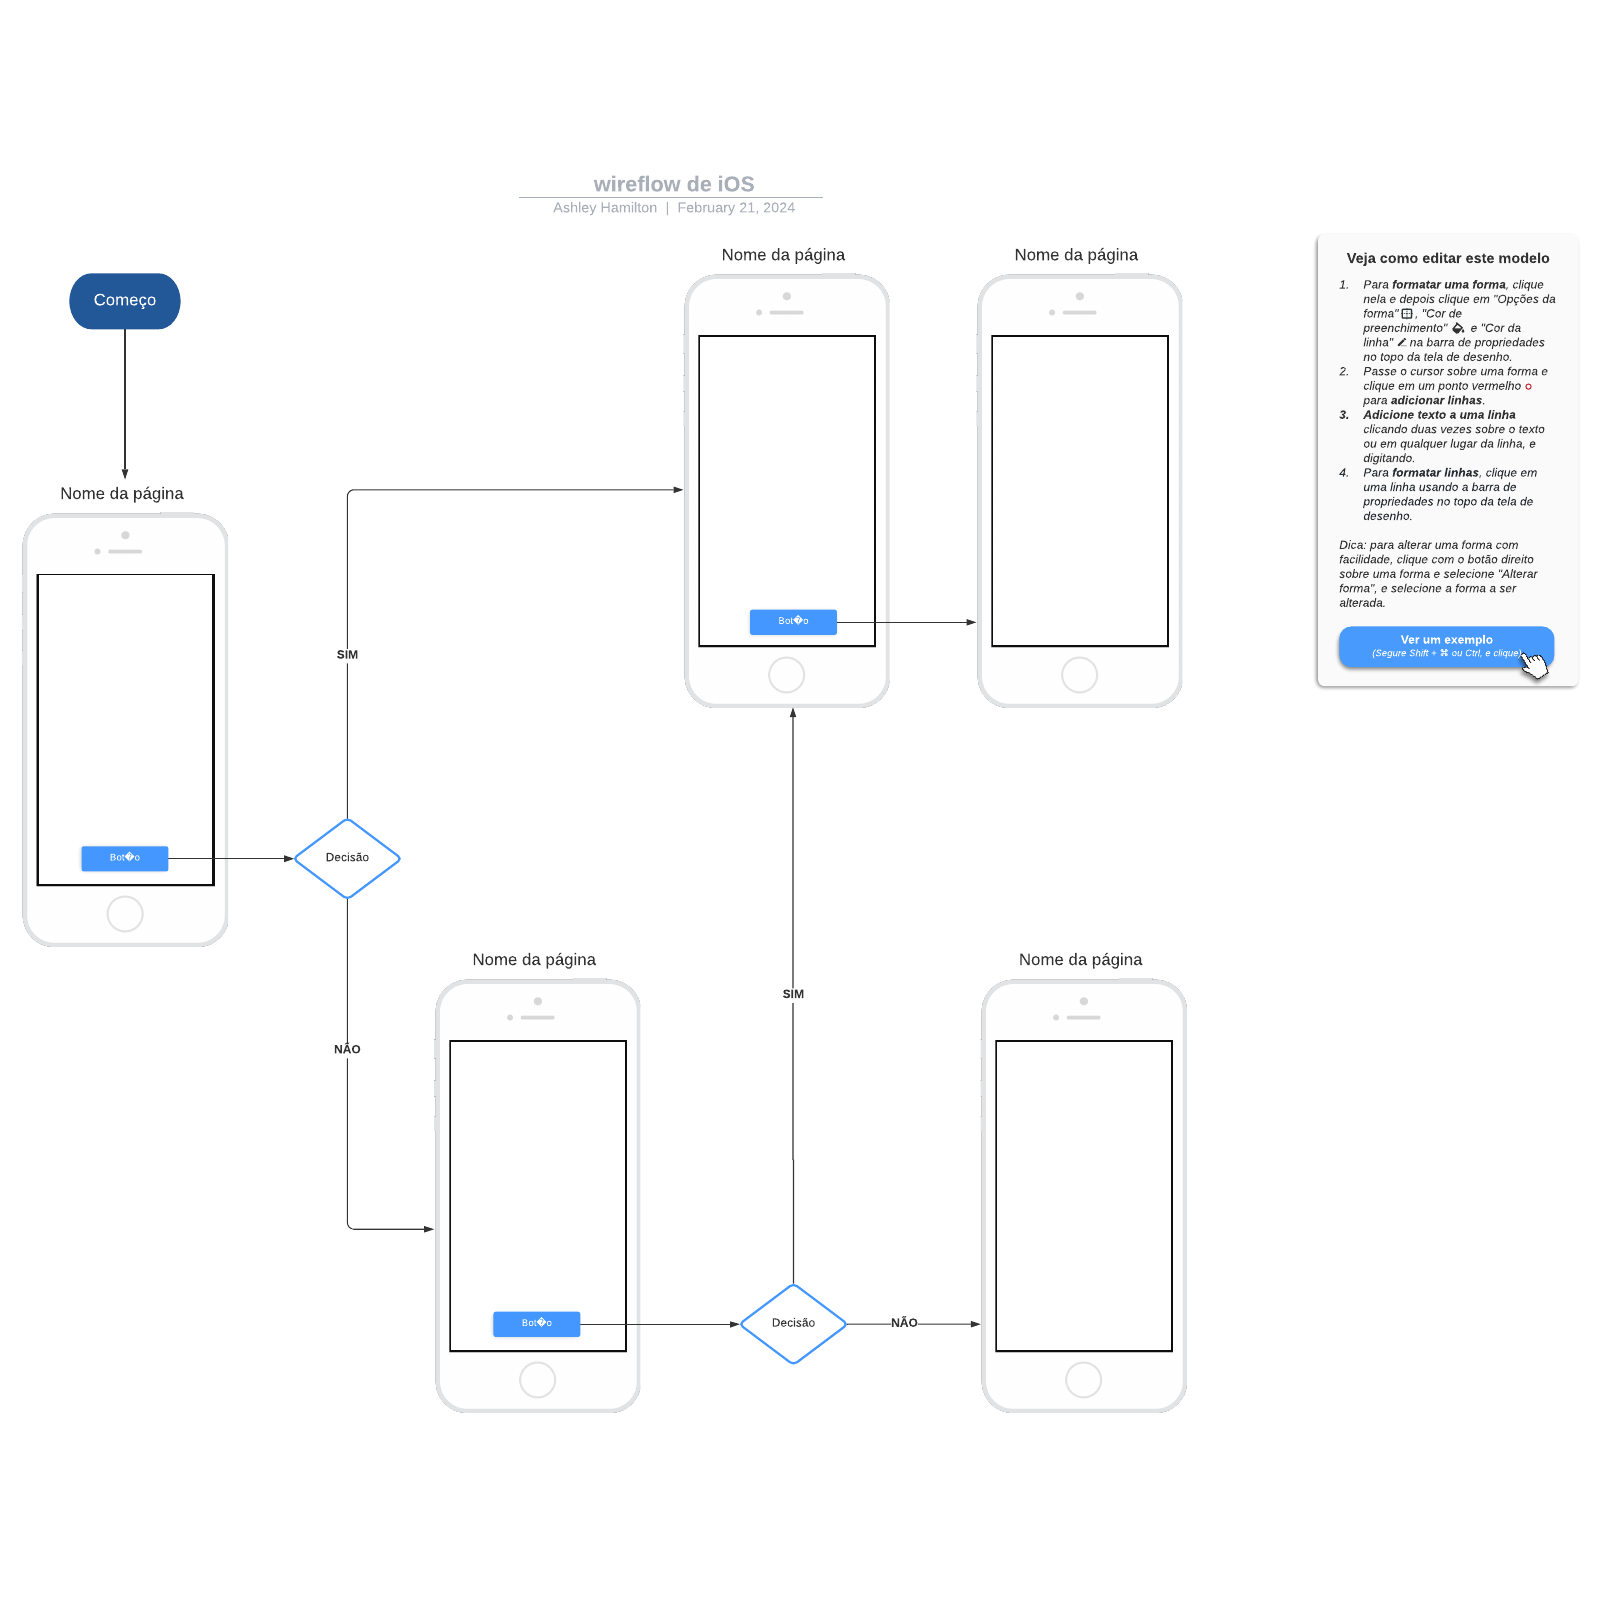 wireflow de iOS example